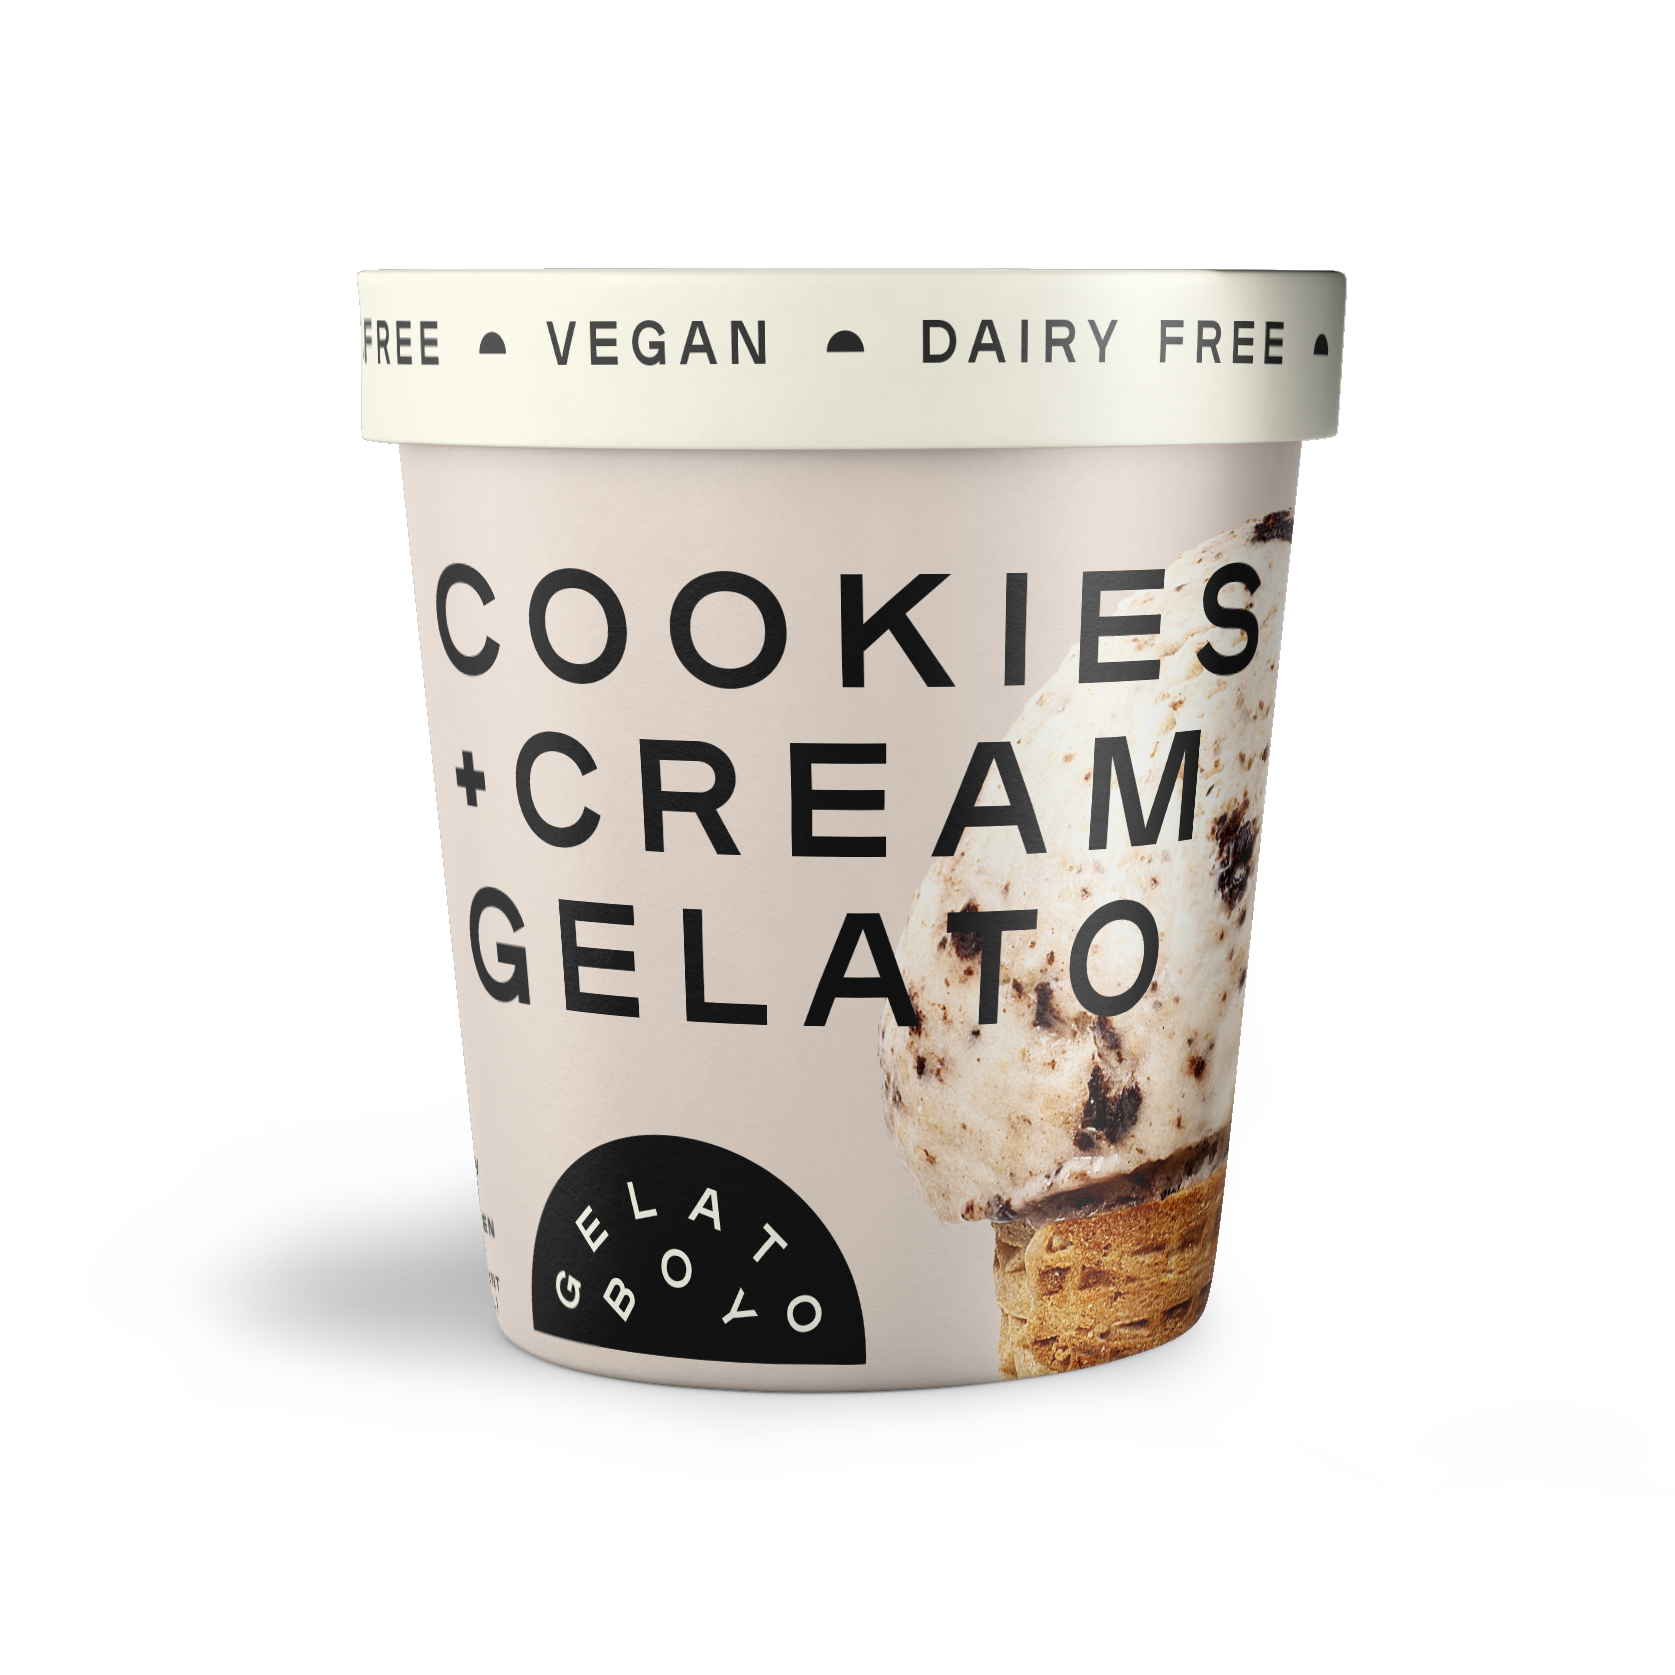 Order DF / Vegan Cookies + Cream food online from Gelato Boy store, Denver on bringmethat.com